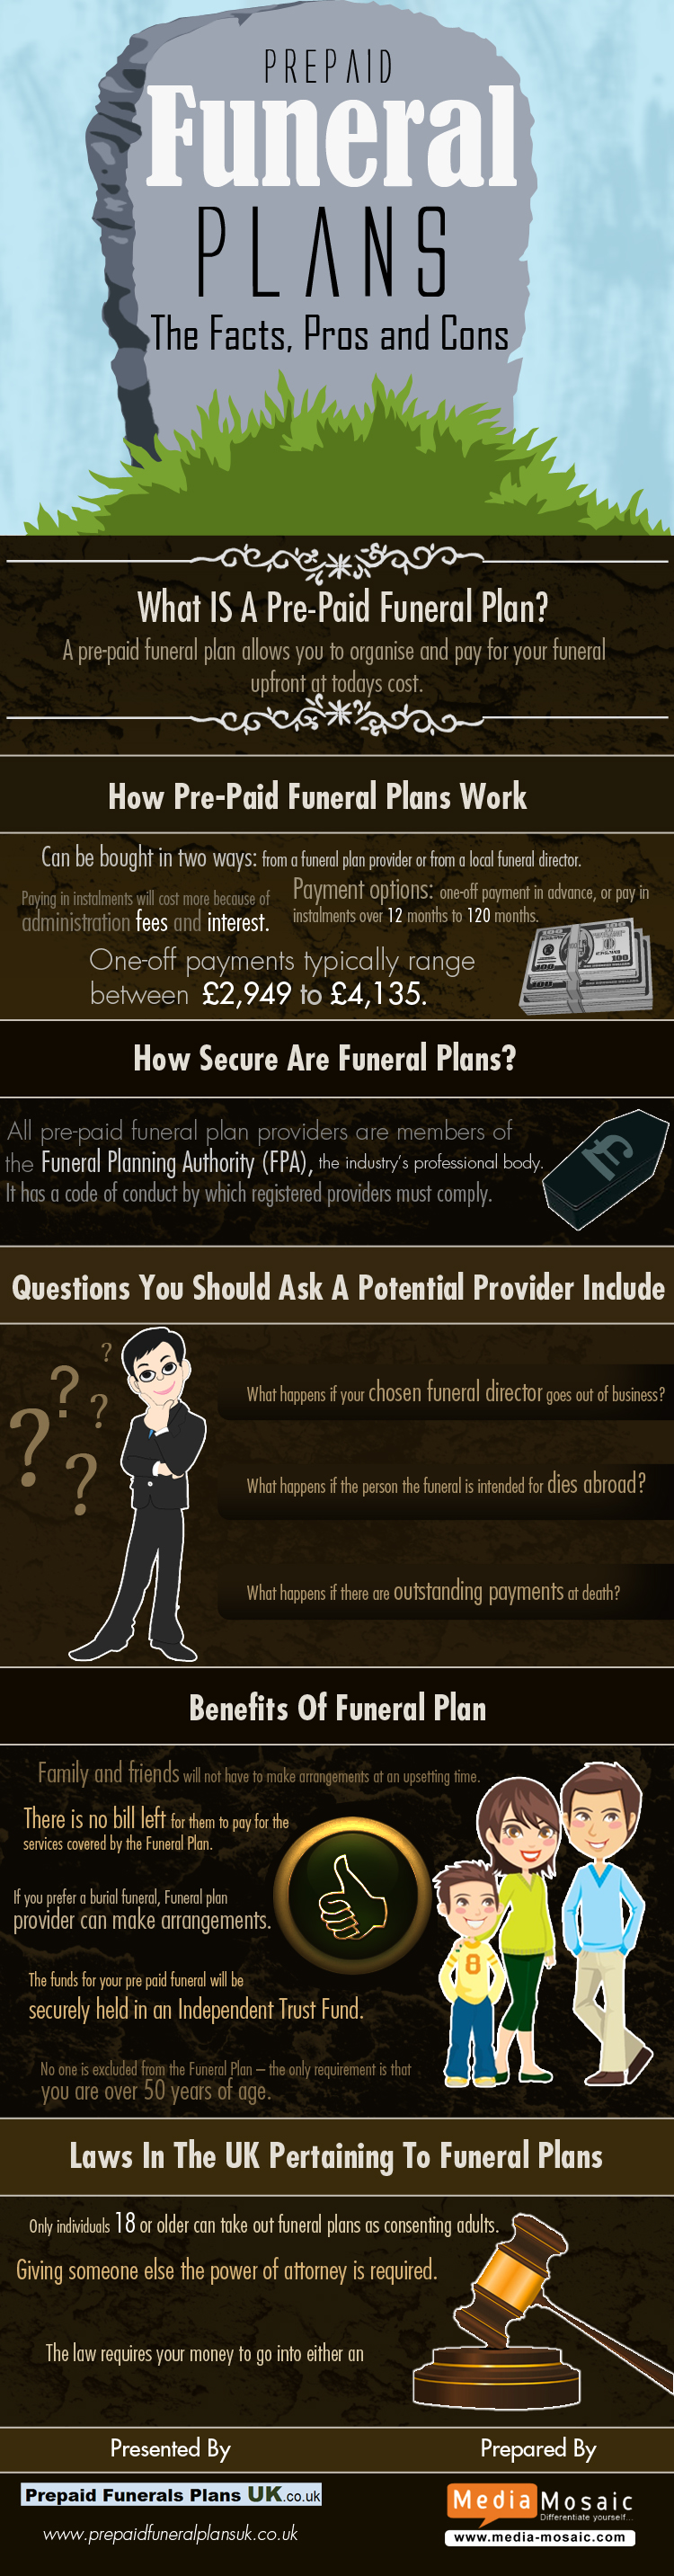 Over 50 Life Insurance vs Prepaid Funeral Plans - Aviva